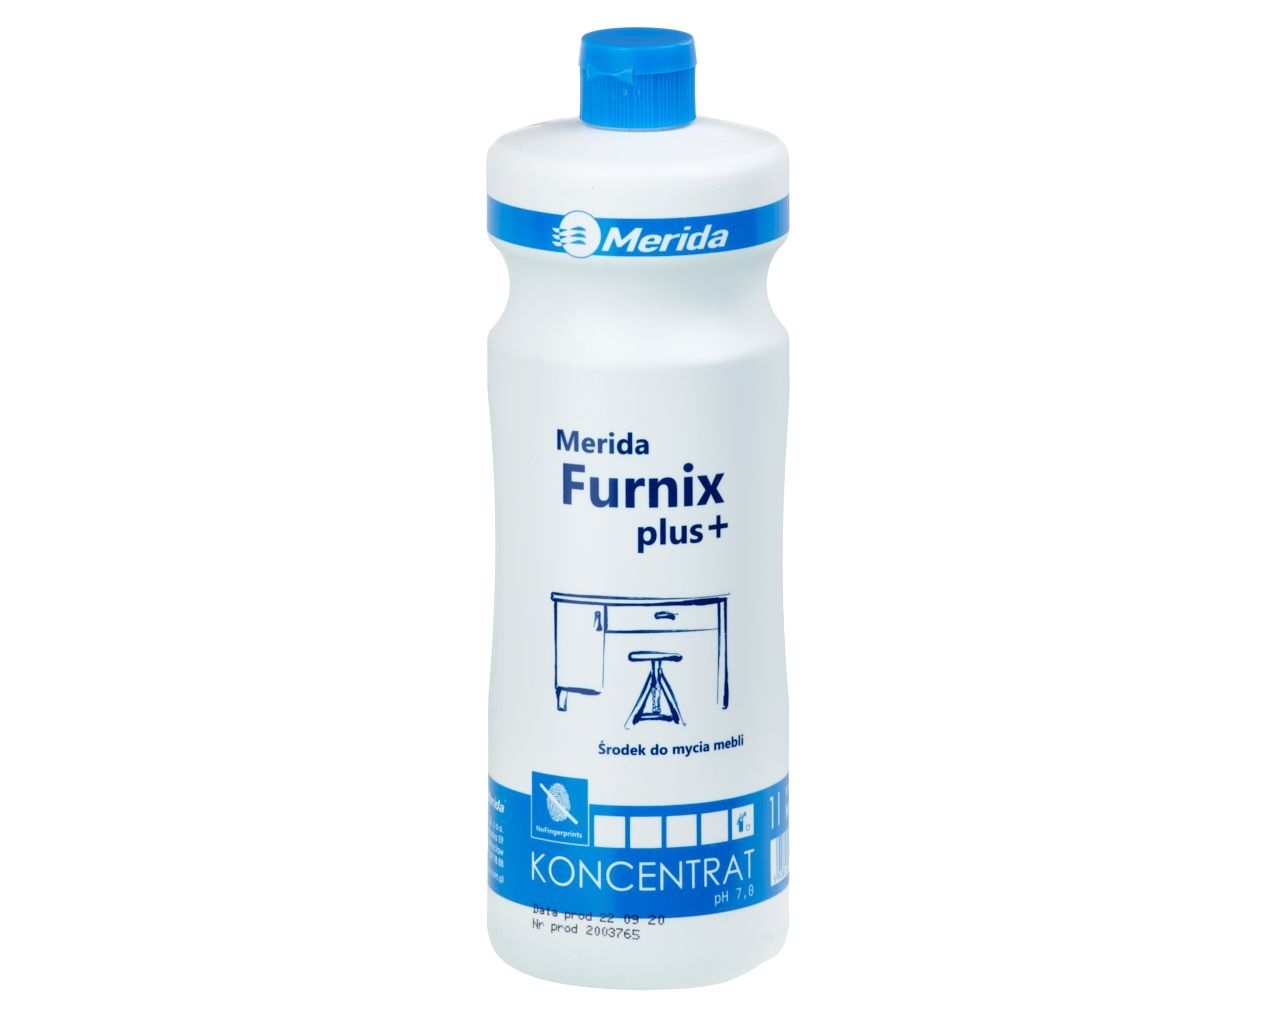 MERIDA FURNIX PLUS+ Środek do mycia mebli matowych i z połyskiem, butelka 1 l